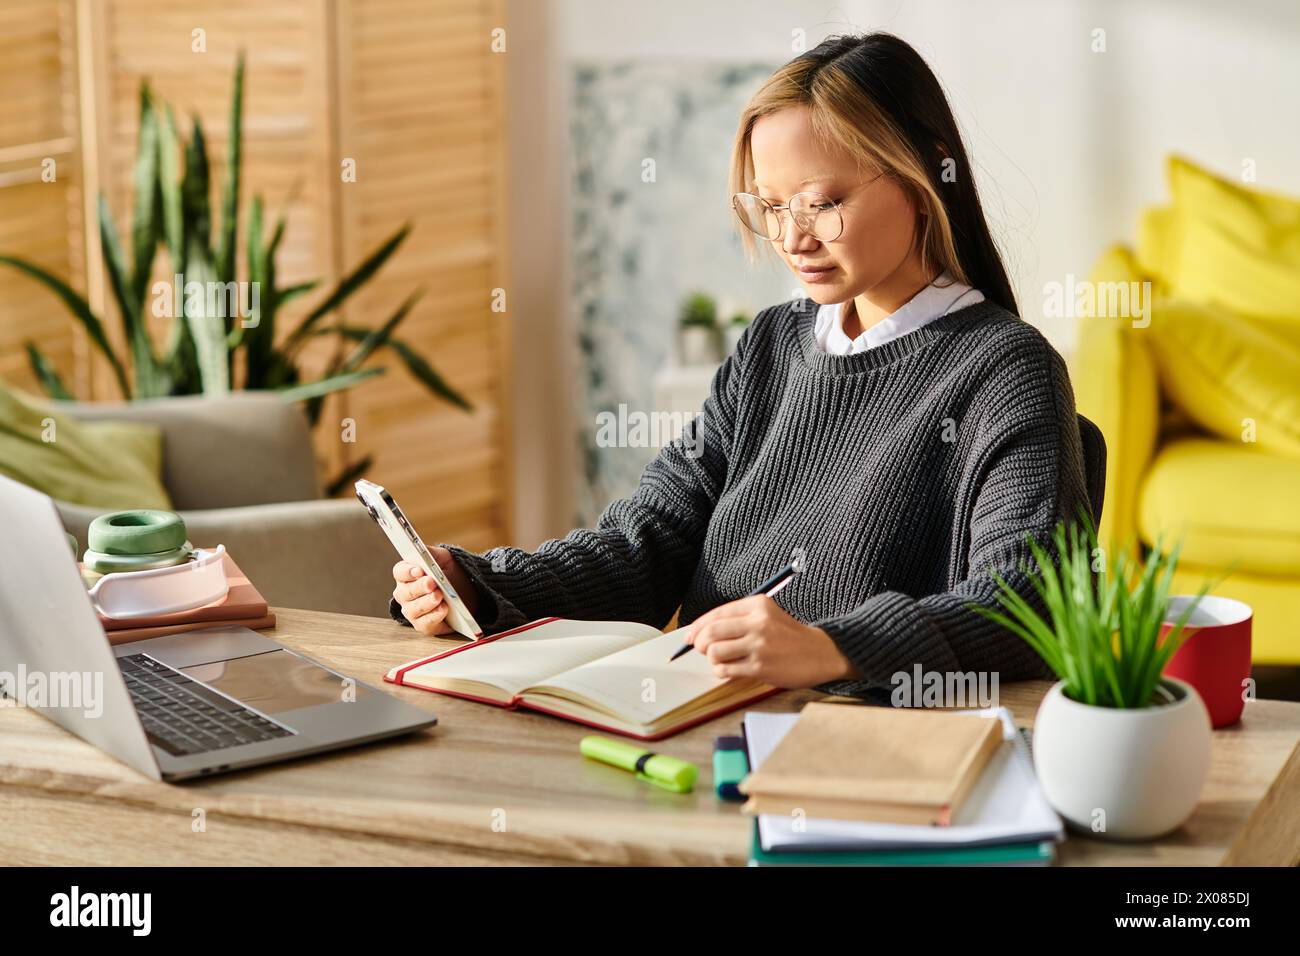 Ein junges asiatisches Mädchen, das am Schreibtisch sitzt und sich während des Studiums zuhause auf einen Laptop und ein Notebook konzentriert. Stockfoto